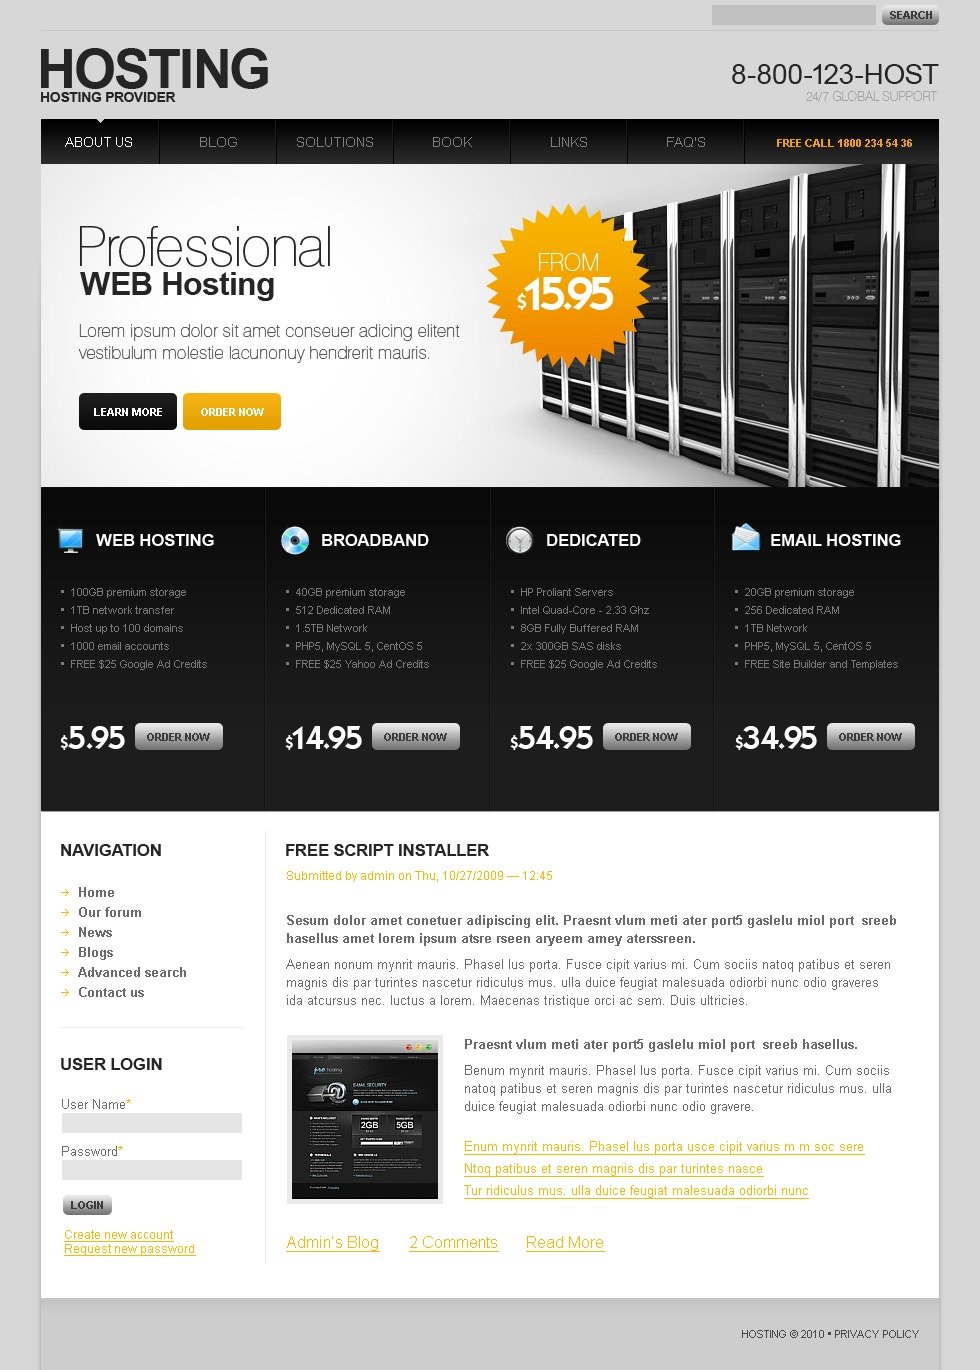 drupal site hosting